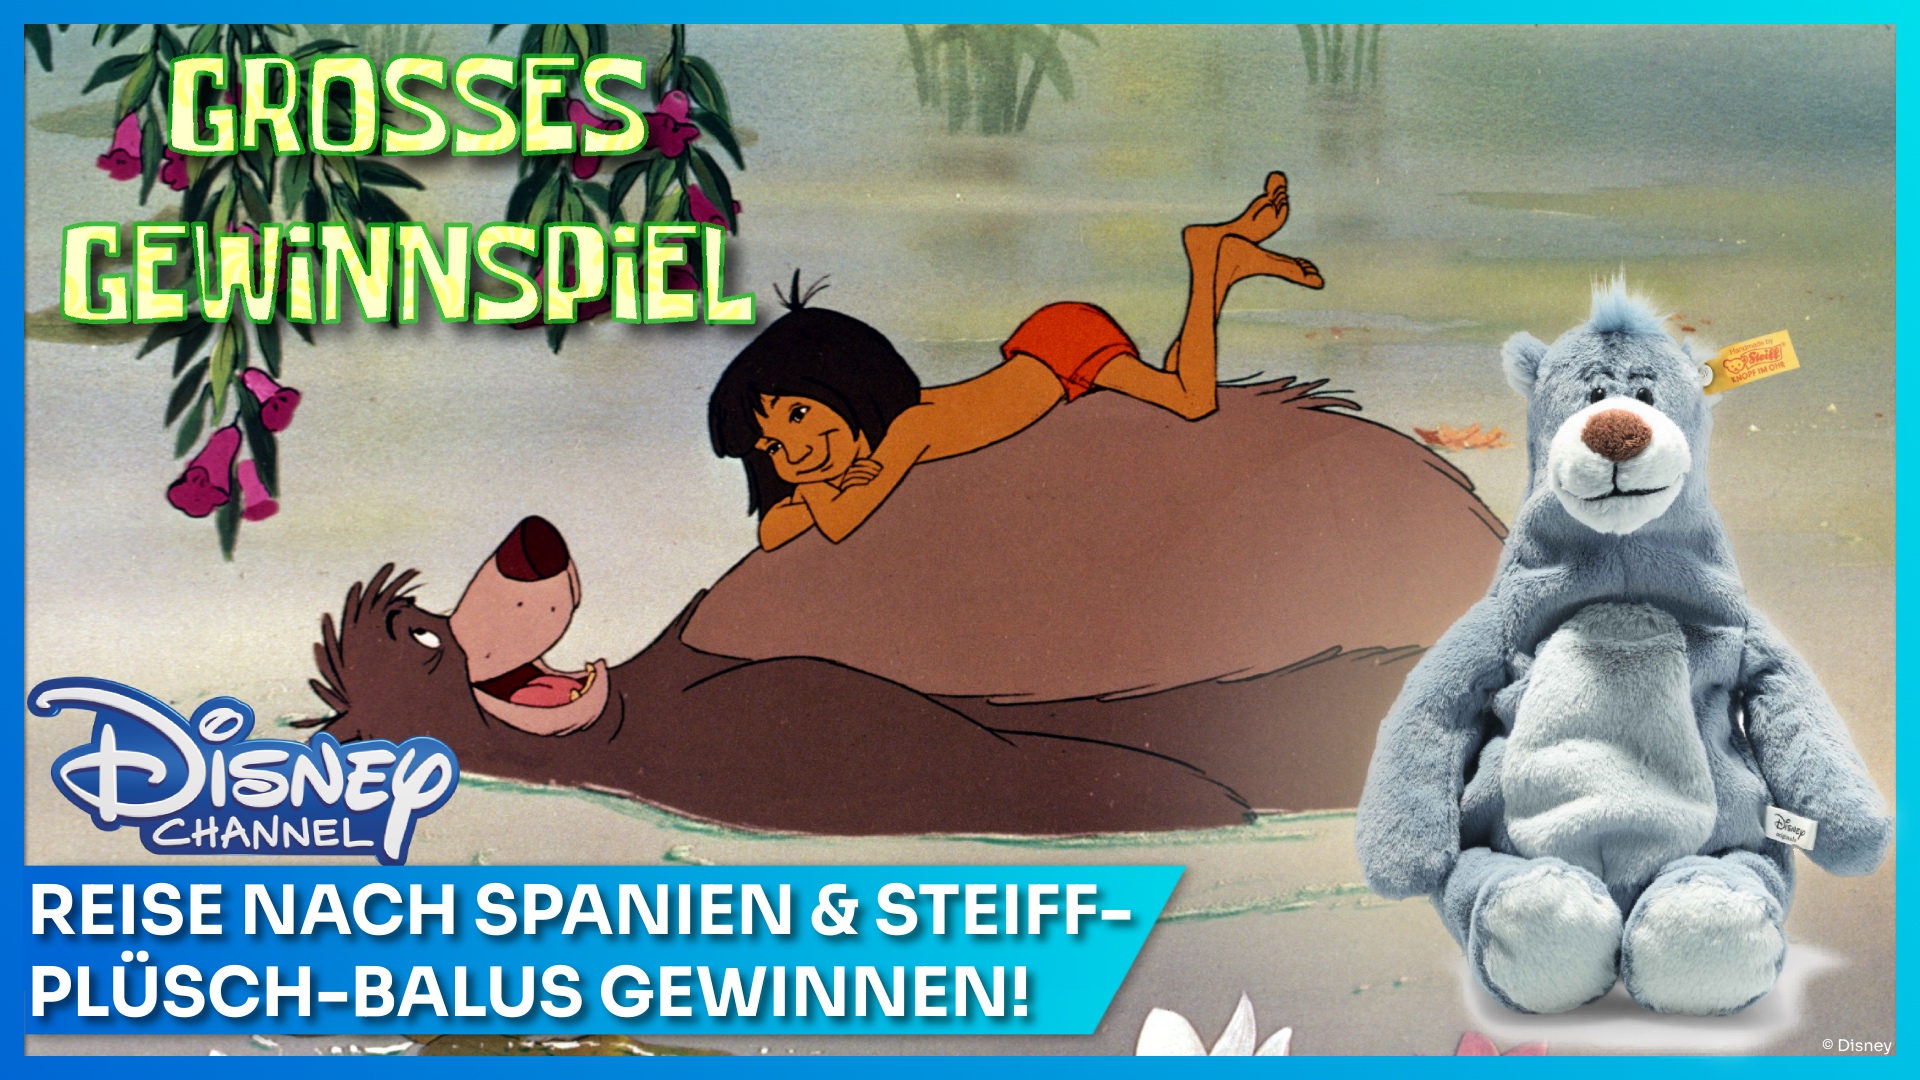 Mit Das Dschungelbuch im Disney Channel Reise nach Spanien und Balu-Plüsch von Steiff gewinnen